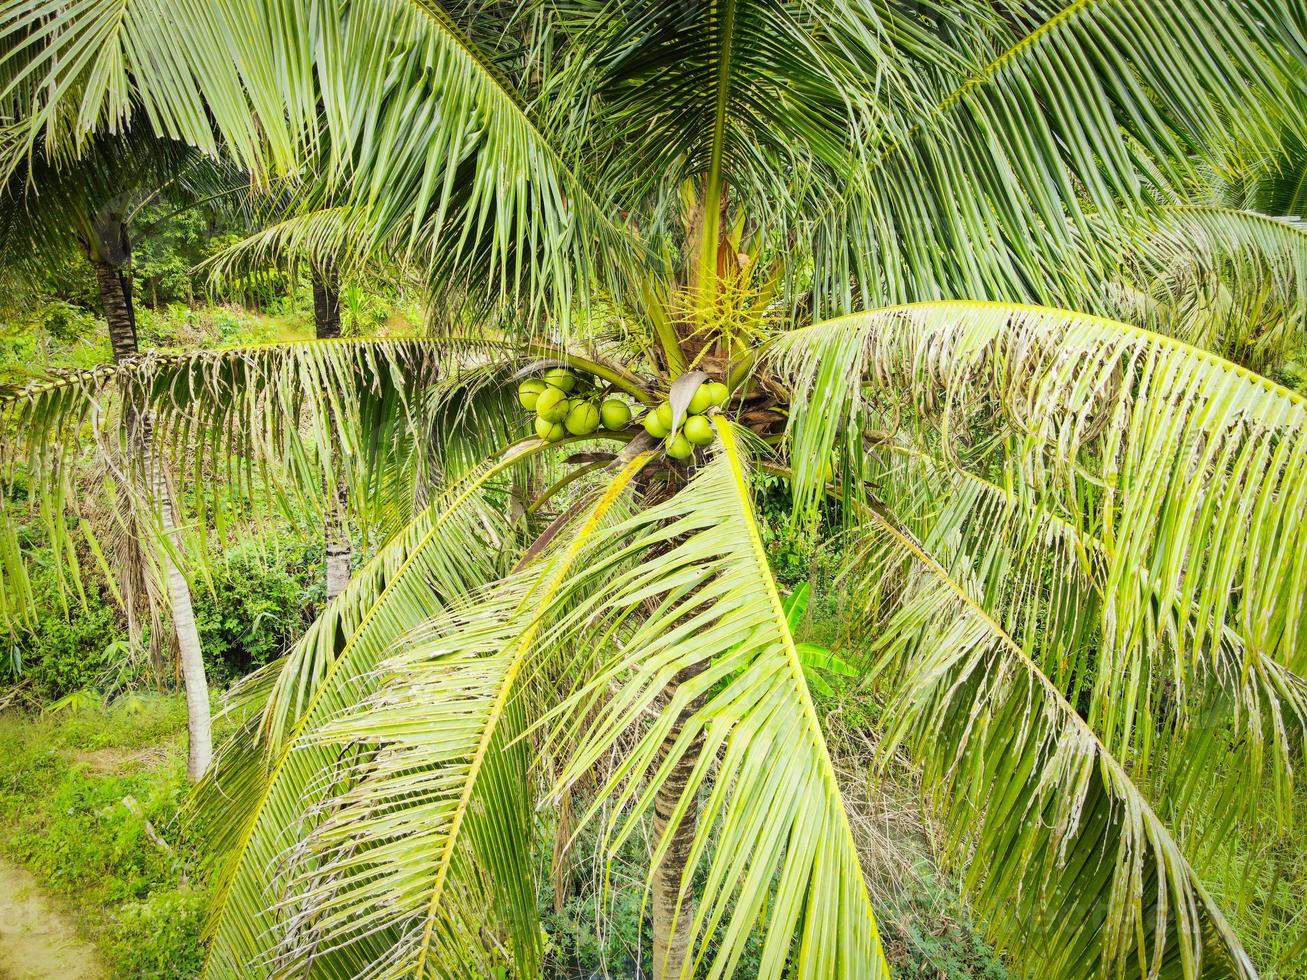 jeune noix de coco sur arbre, fruit tropical de cocotier vert frais sur plante dans le jardin le jour d'été photo